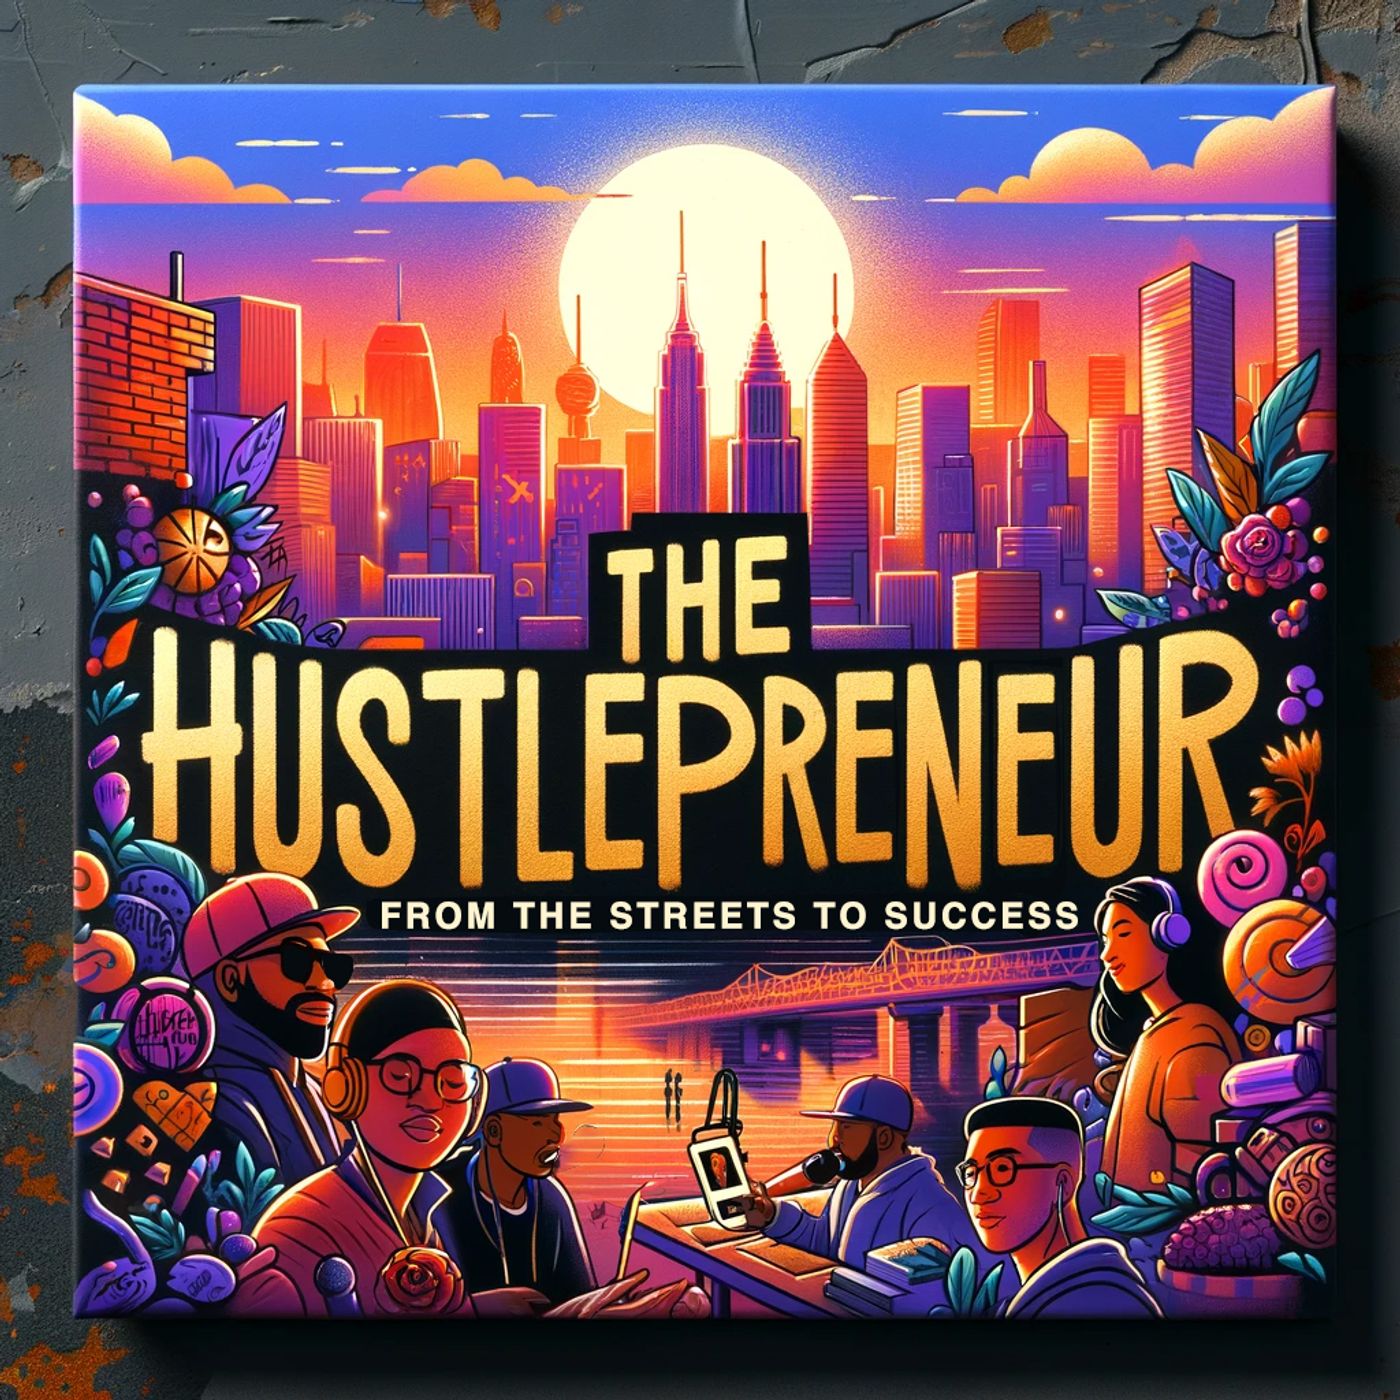 The Hustlepreneur